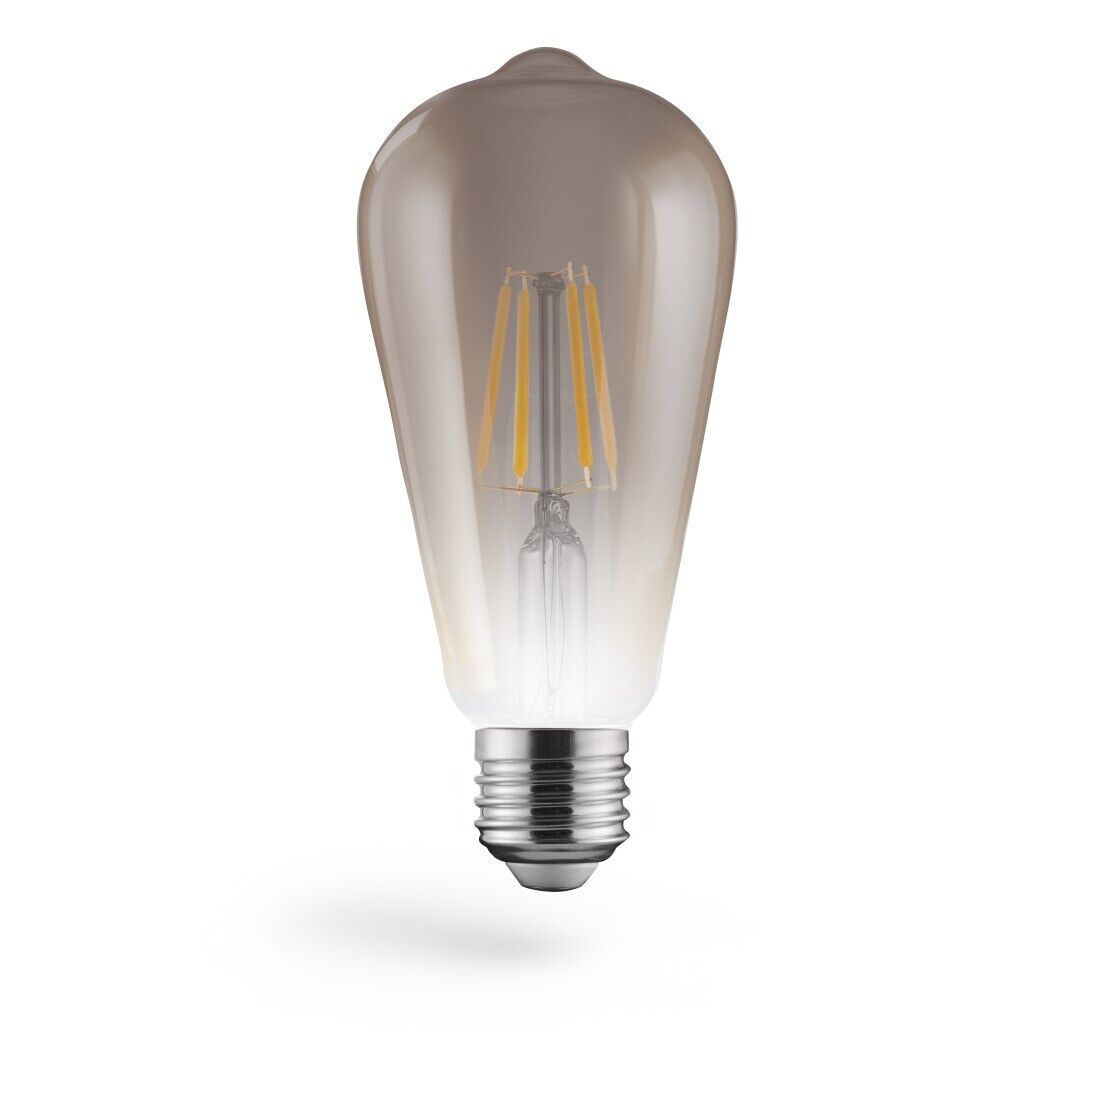 Bulb Filament LED, E27, 430lm 6W, Pist. Edison Vintage, White Warm